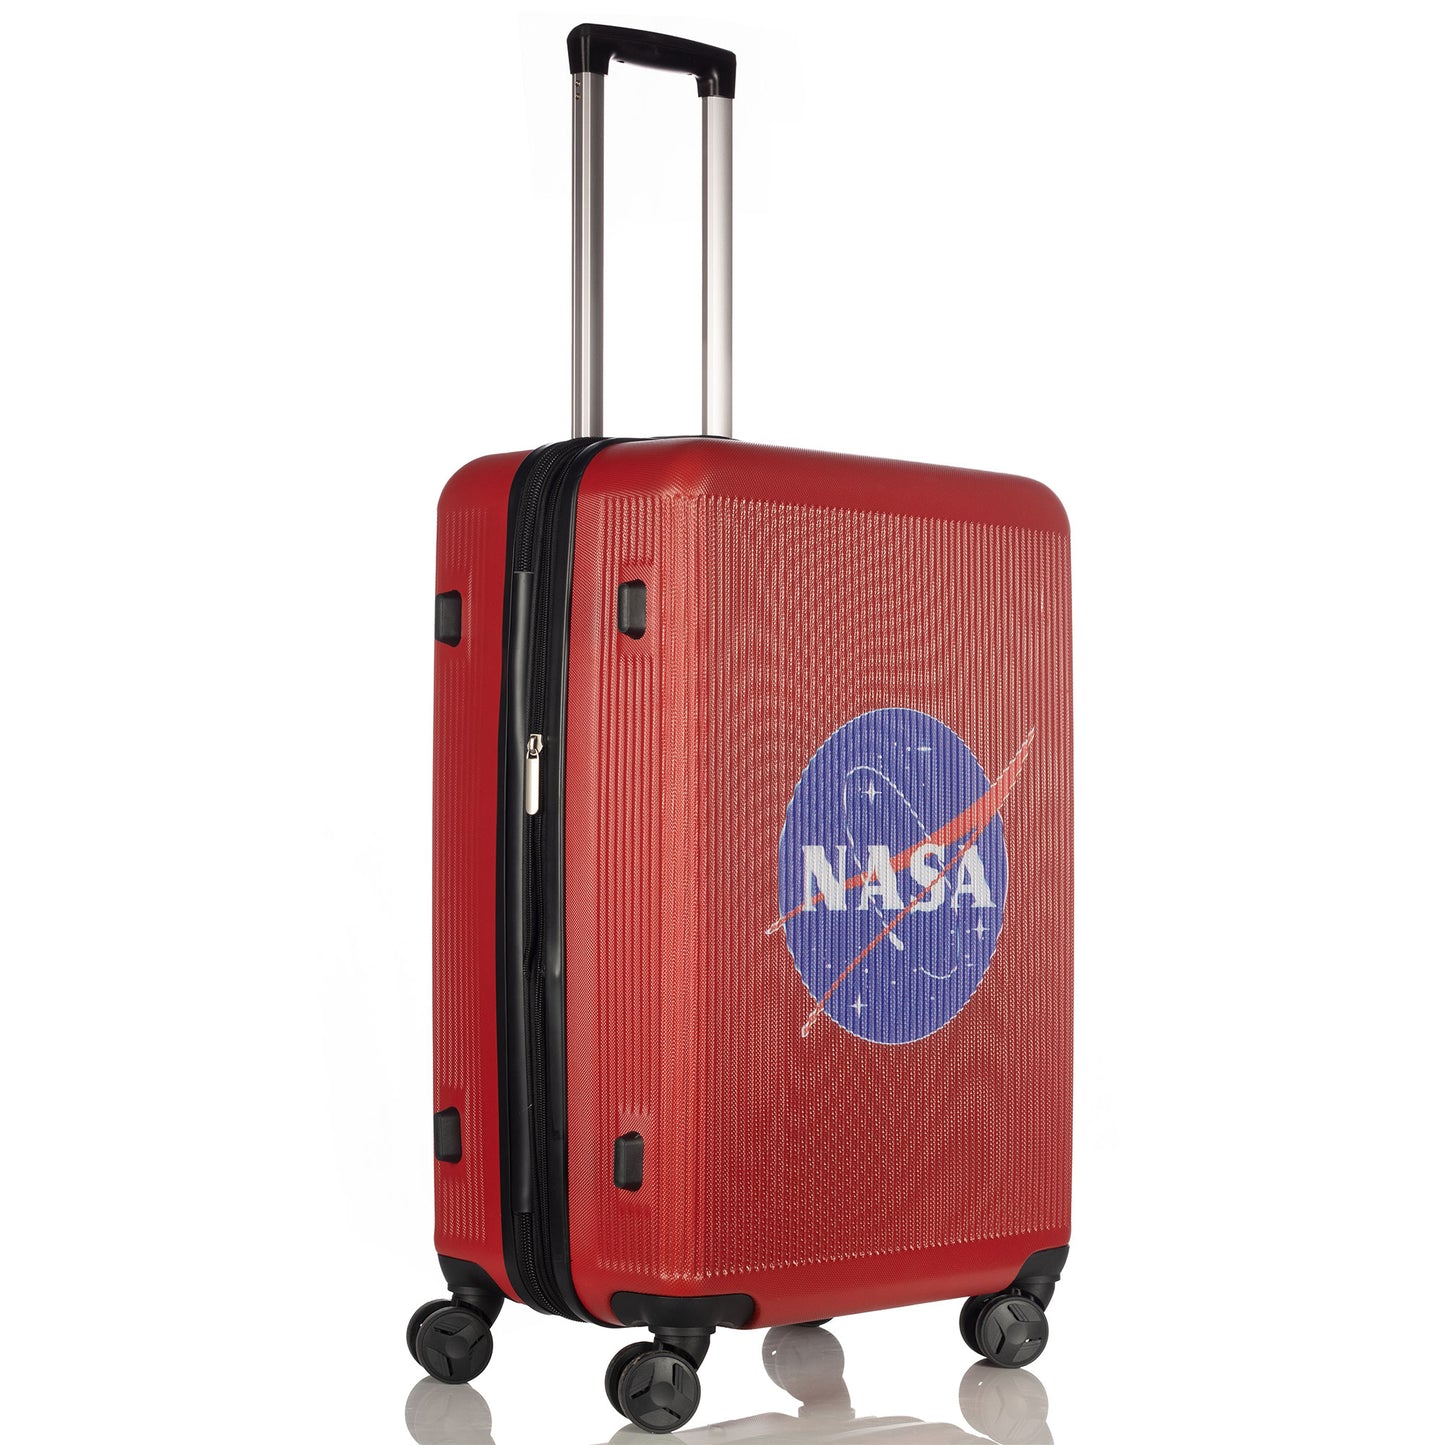 Nasa JFK Red Suitcase (29"/25"/21")